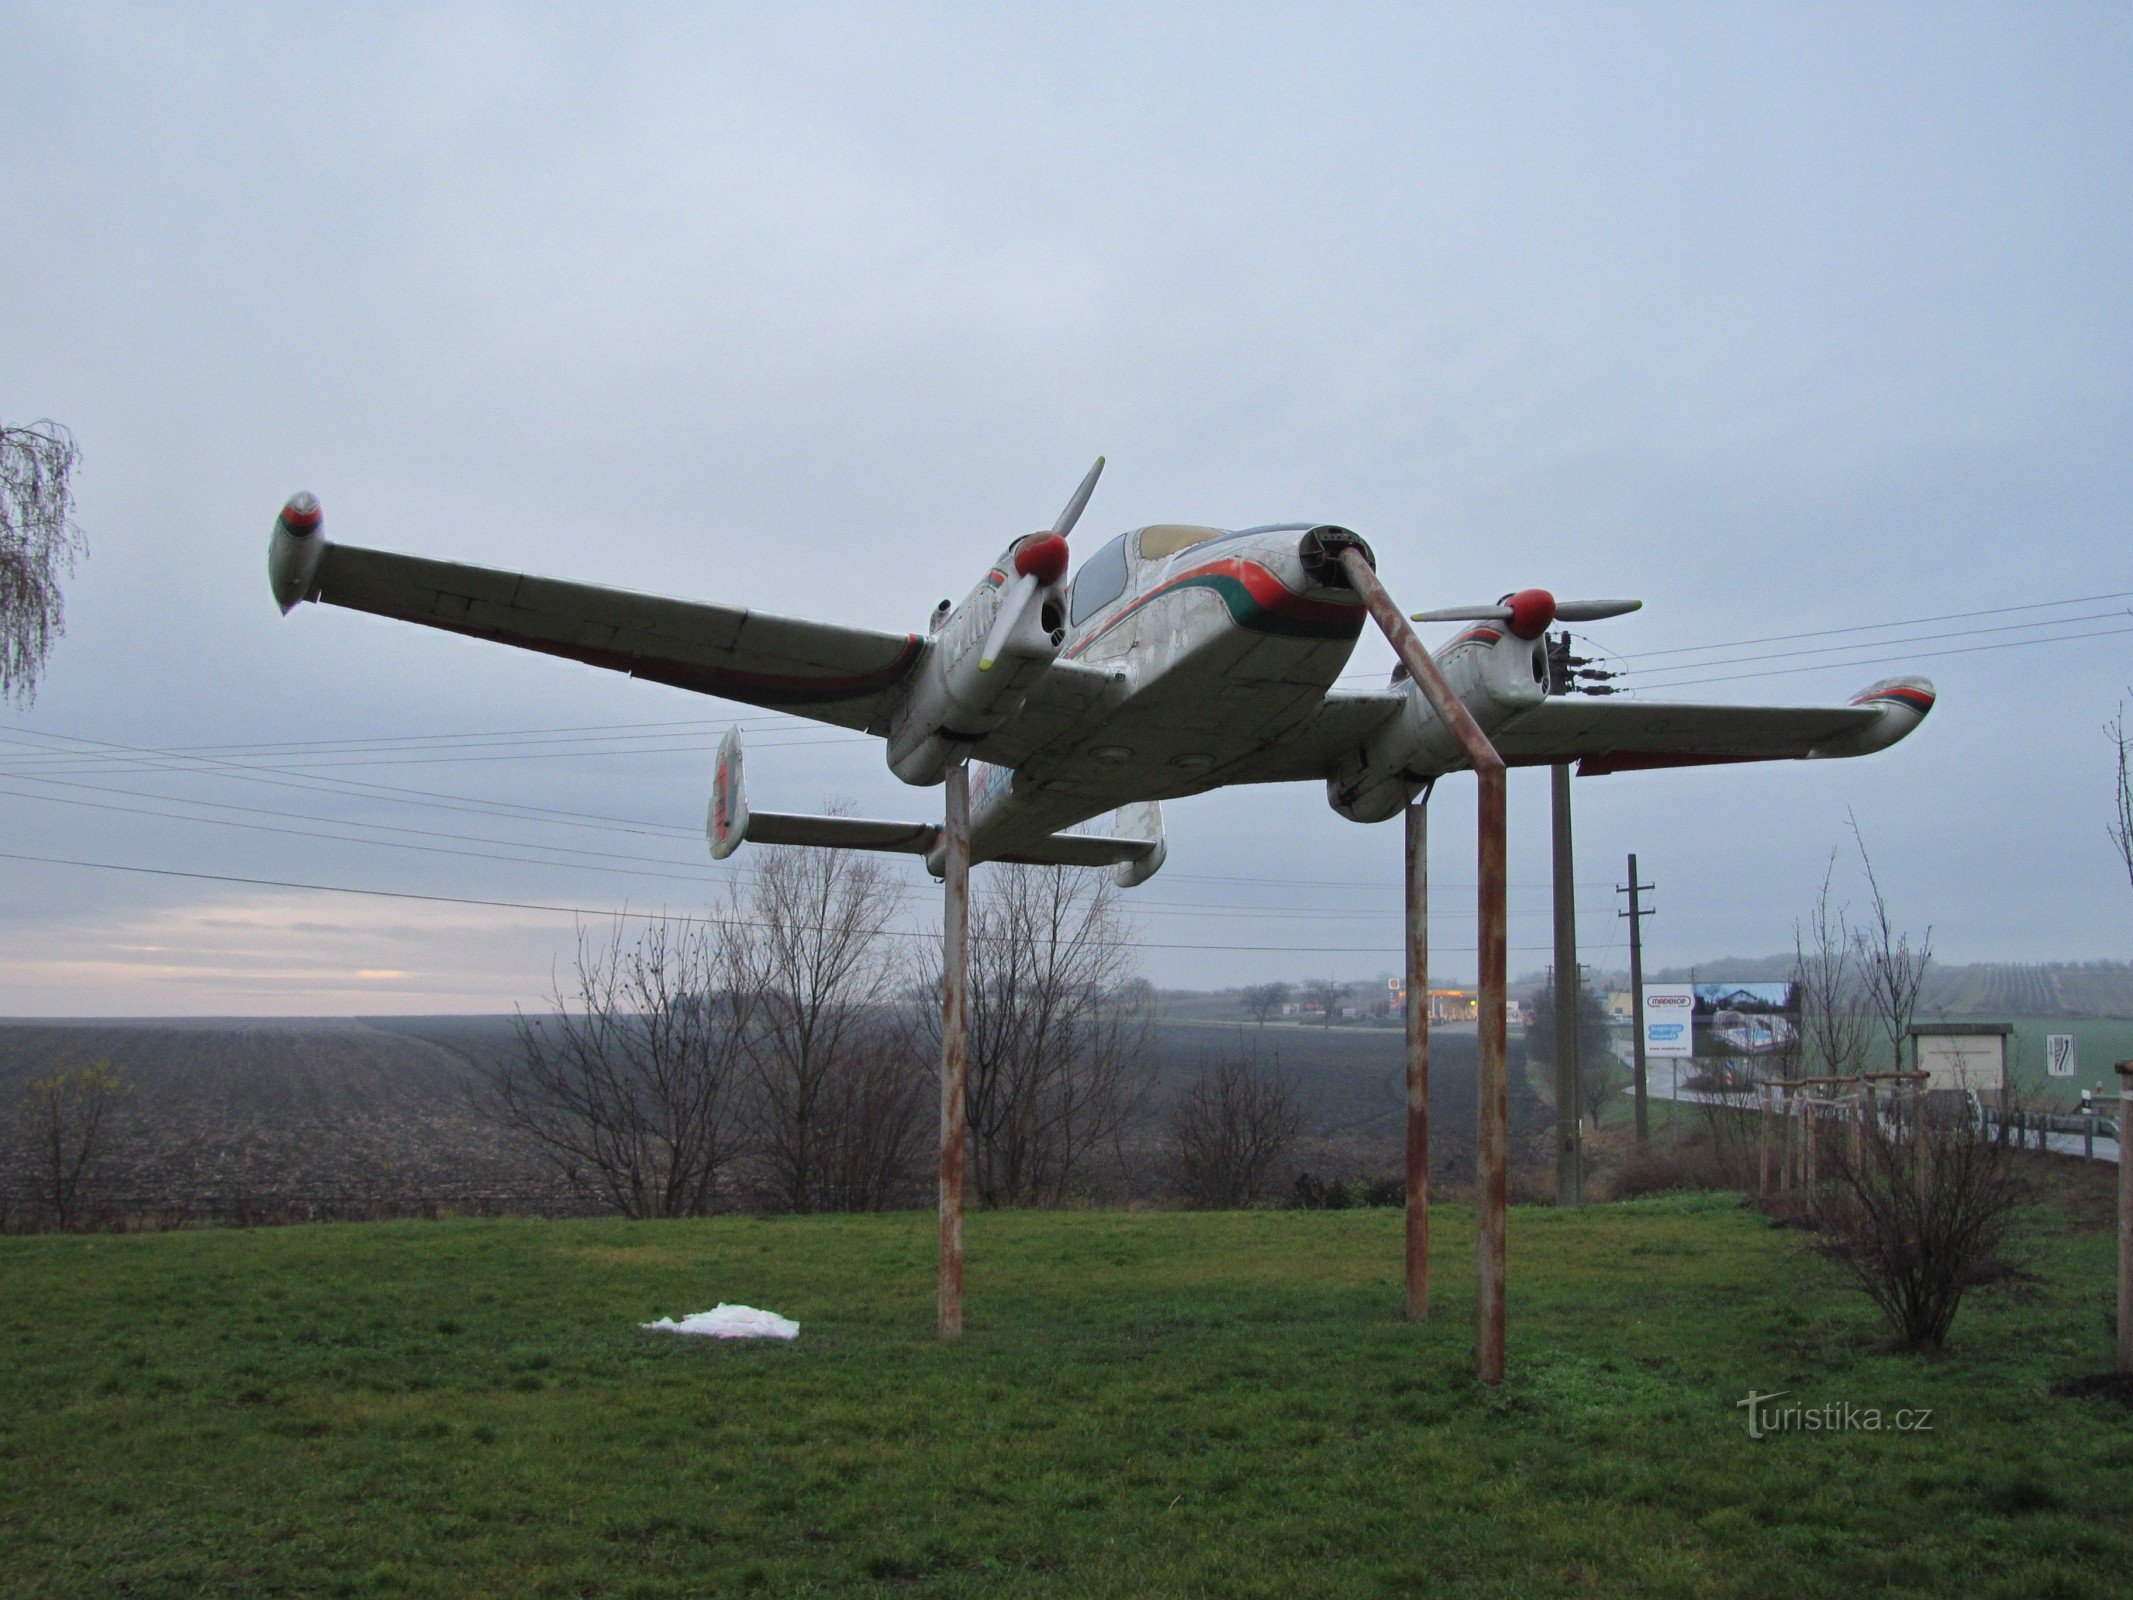 Bořetice – fly L-200 Morava